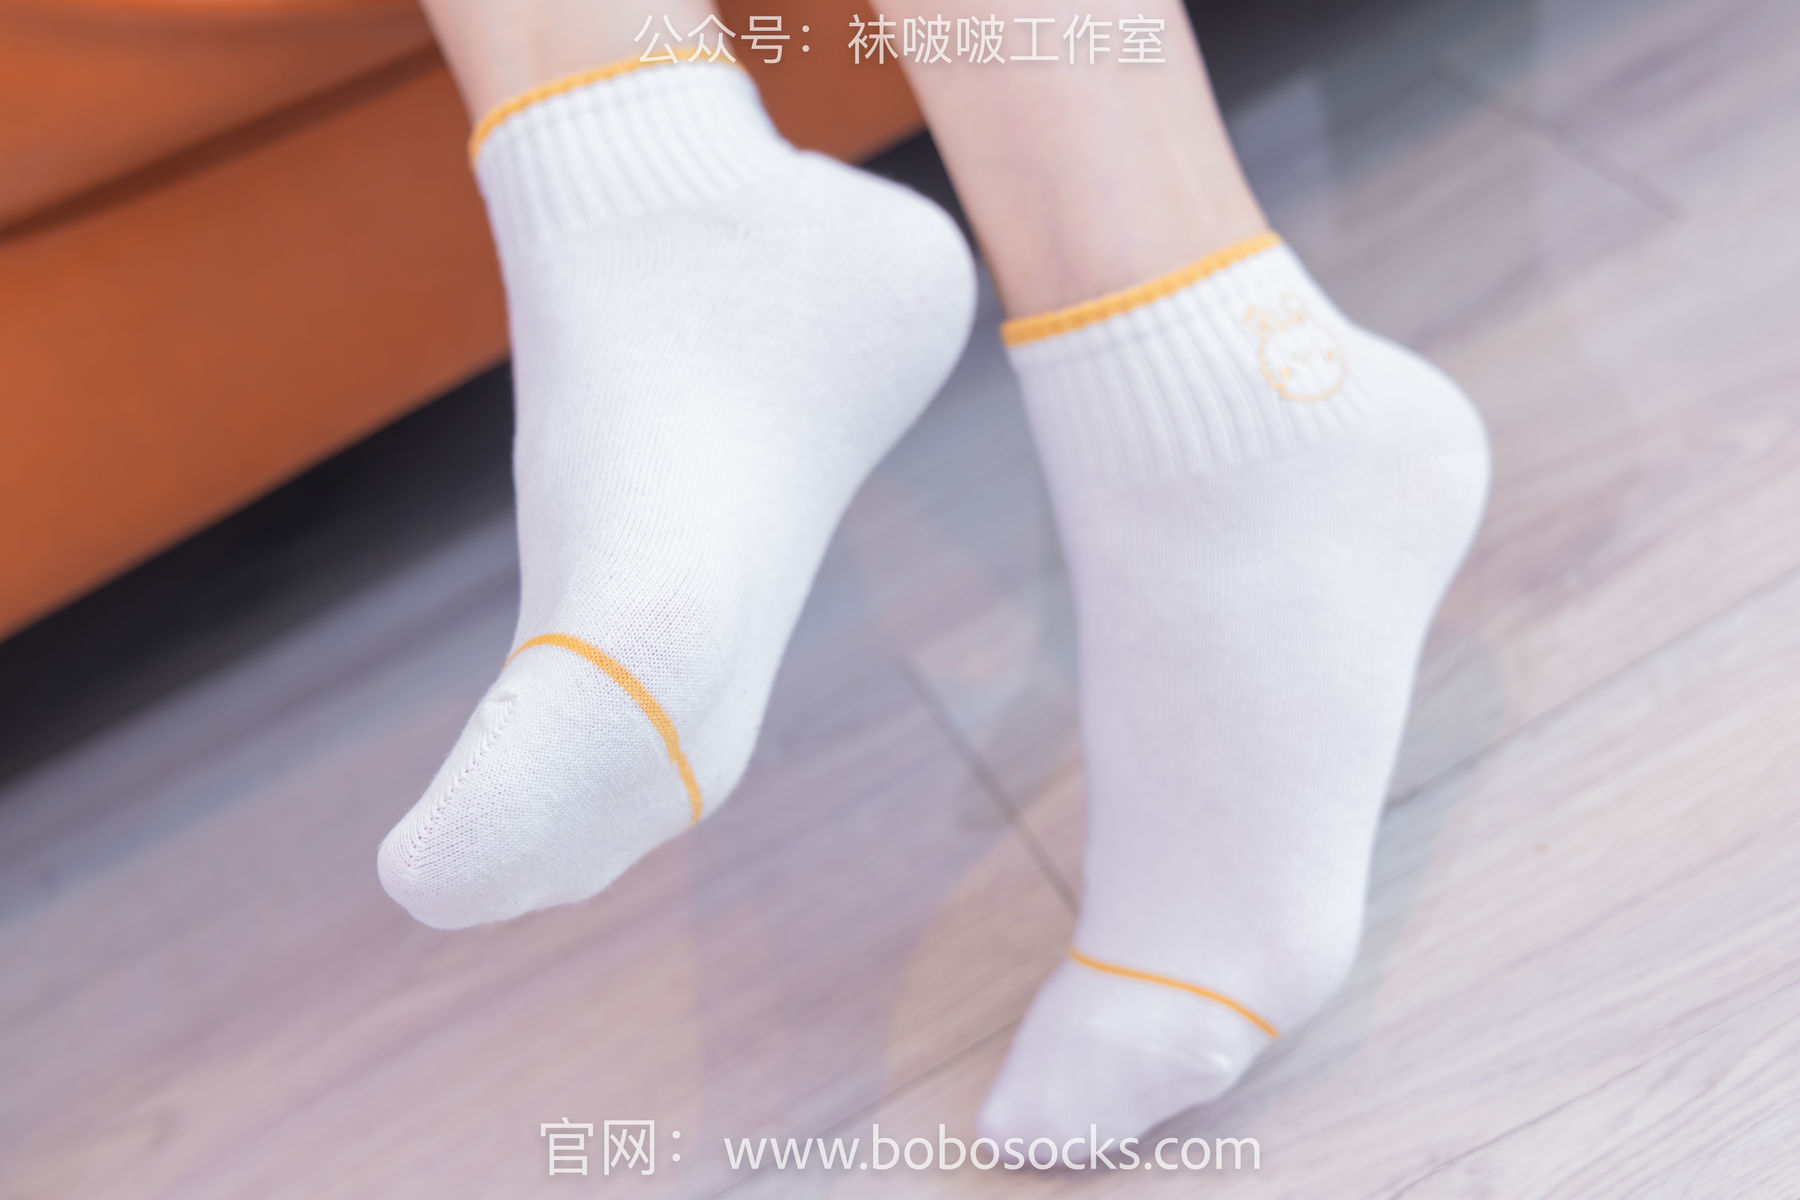 BoBoSocks袜啵啵 No.120 小甜豆-高跟长靴、白棉袜、裸足/(170P)